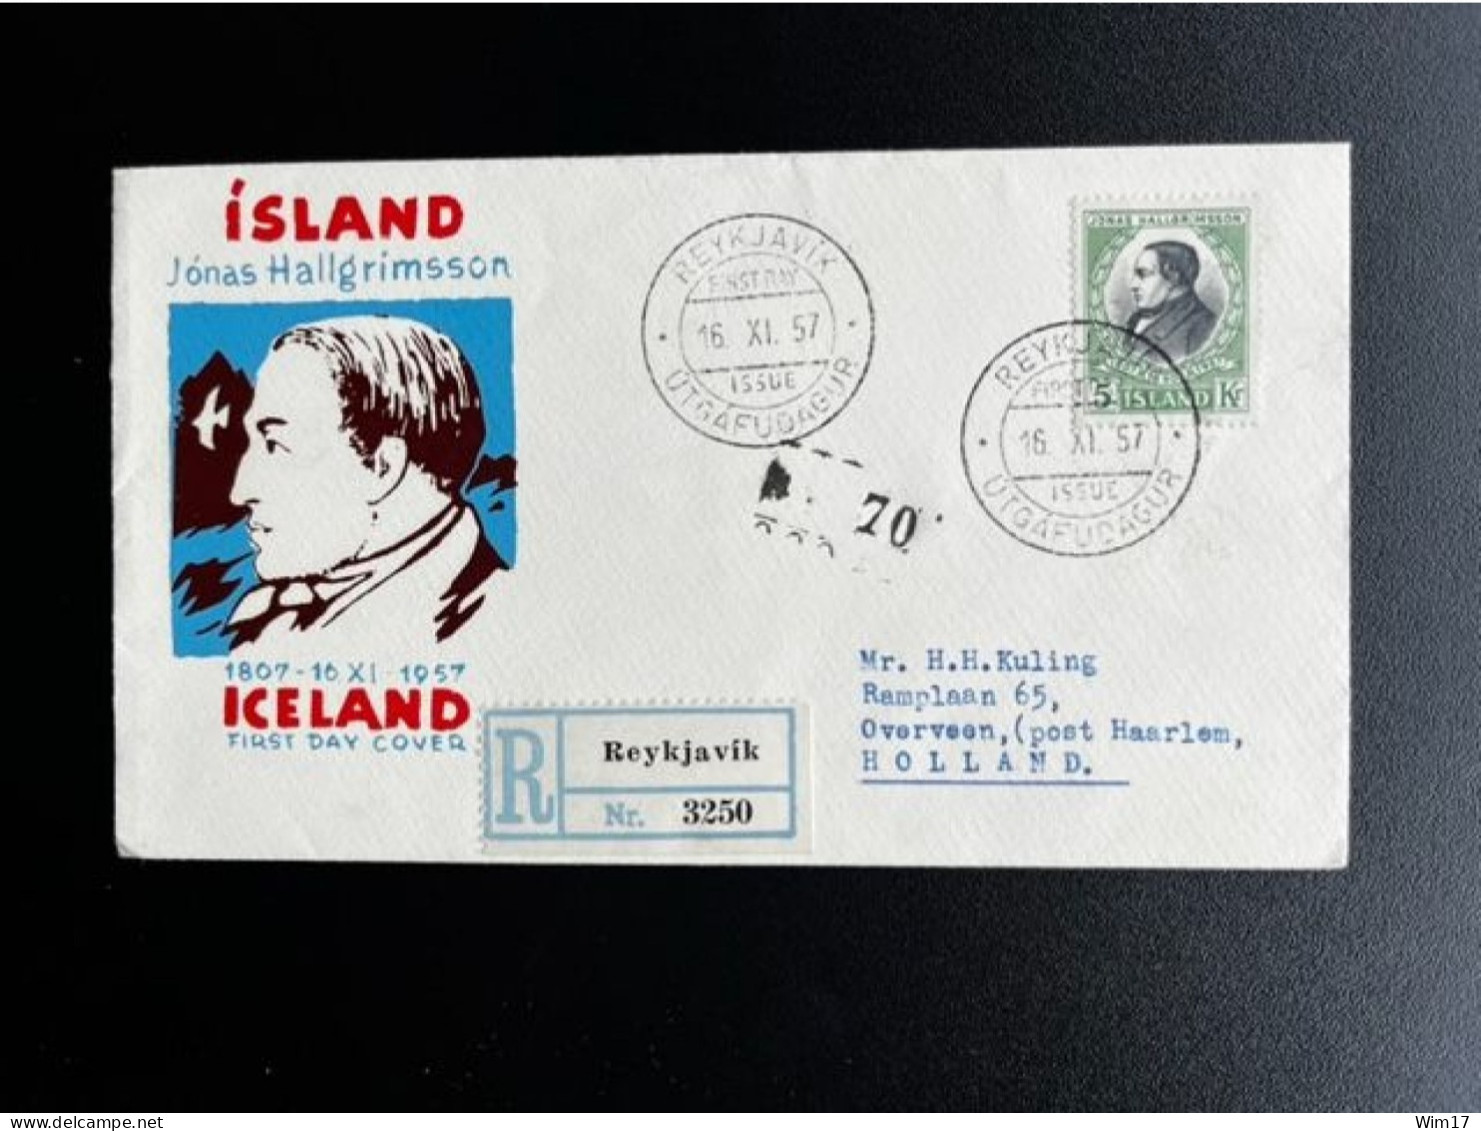 ICELAND ISLAND 1957 REGISTERED FDC HALLGRIMSSON TO OVERVEEN 16-11-1957 IJSLAND AANGETEKEND POET - FDC